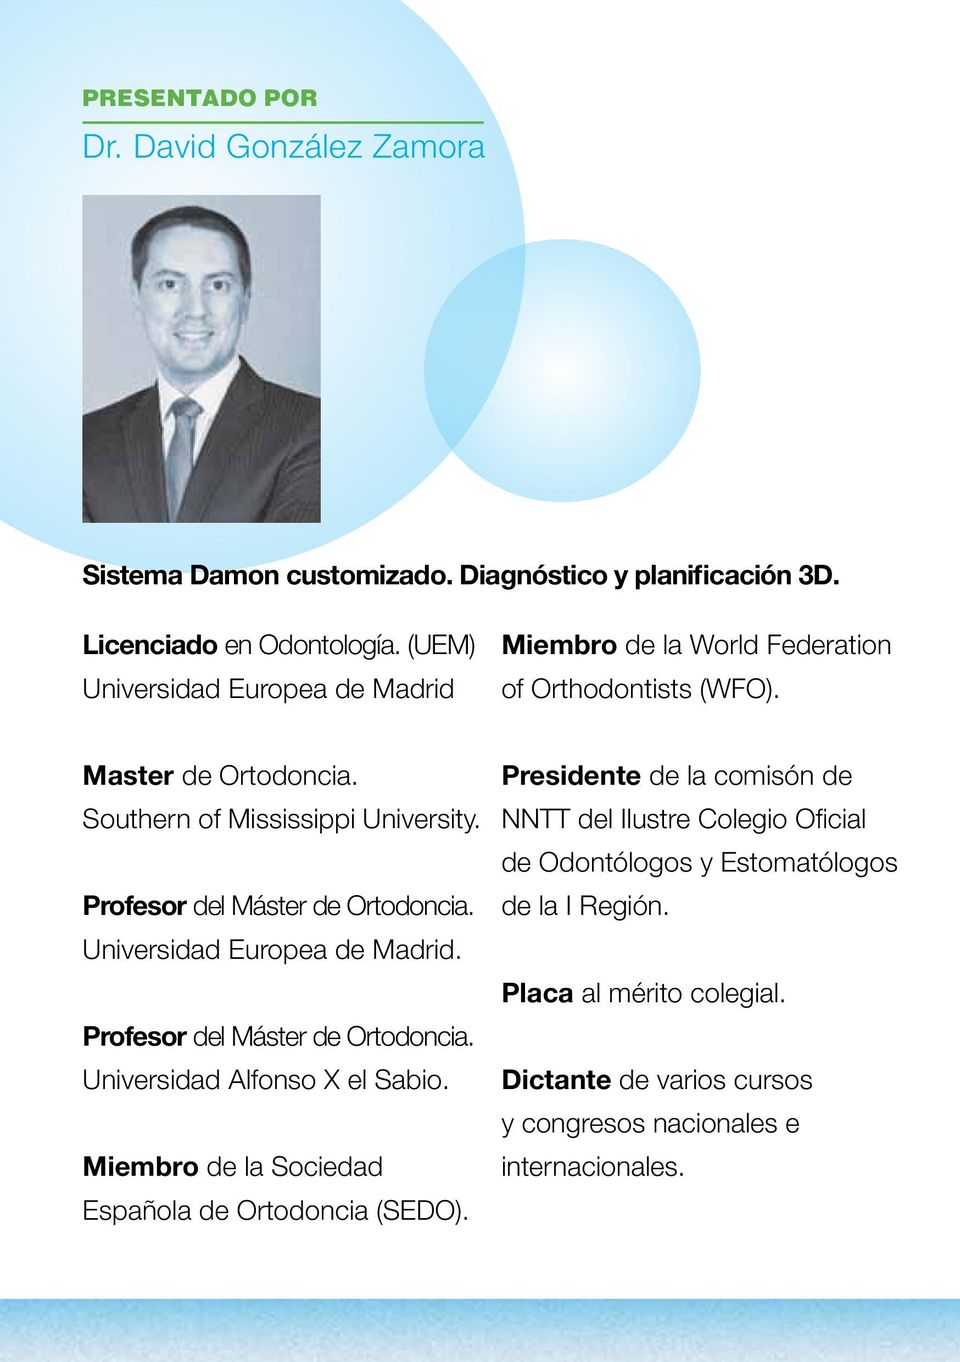 Profesor del Máster de Ortodoncia. Universidad Europea de Madrid. Profesor del Máster de Ortodoncia. Universidad Alfonso X el Sabio.